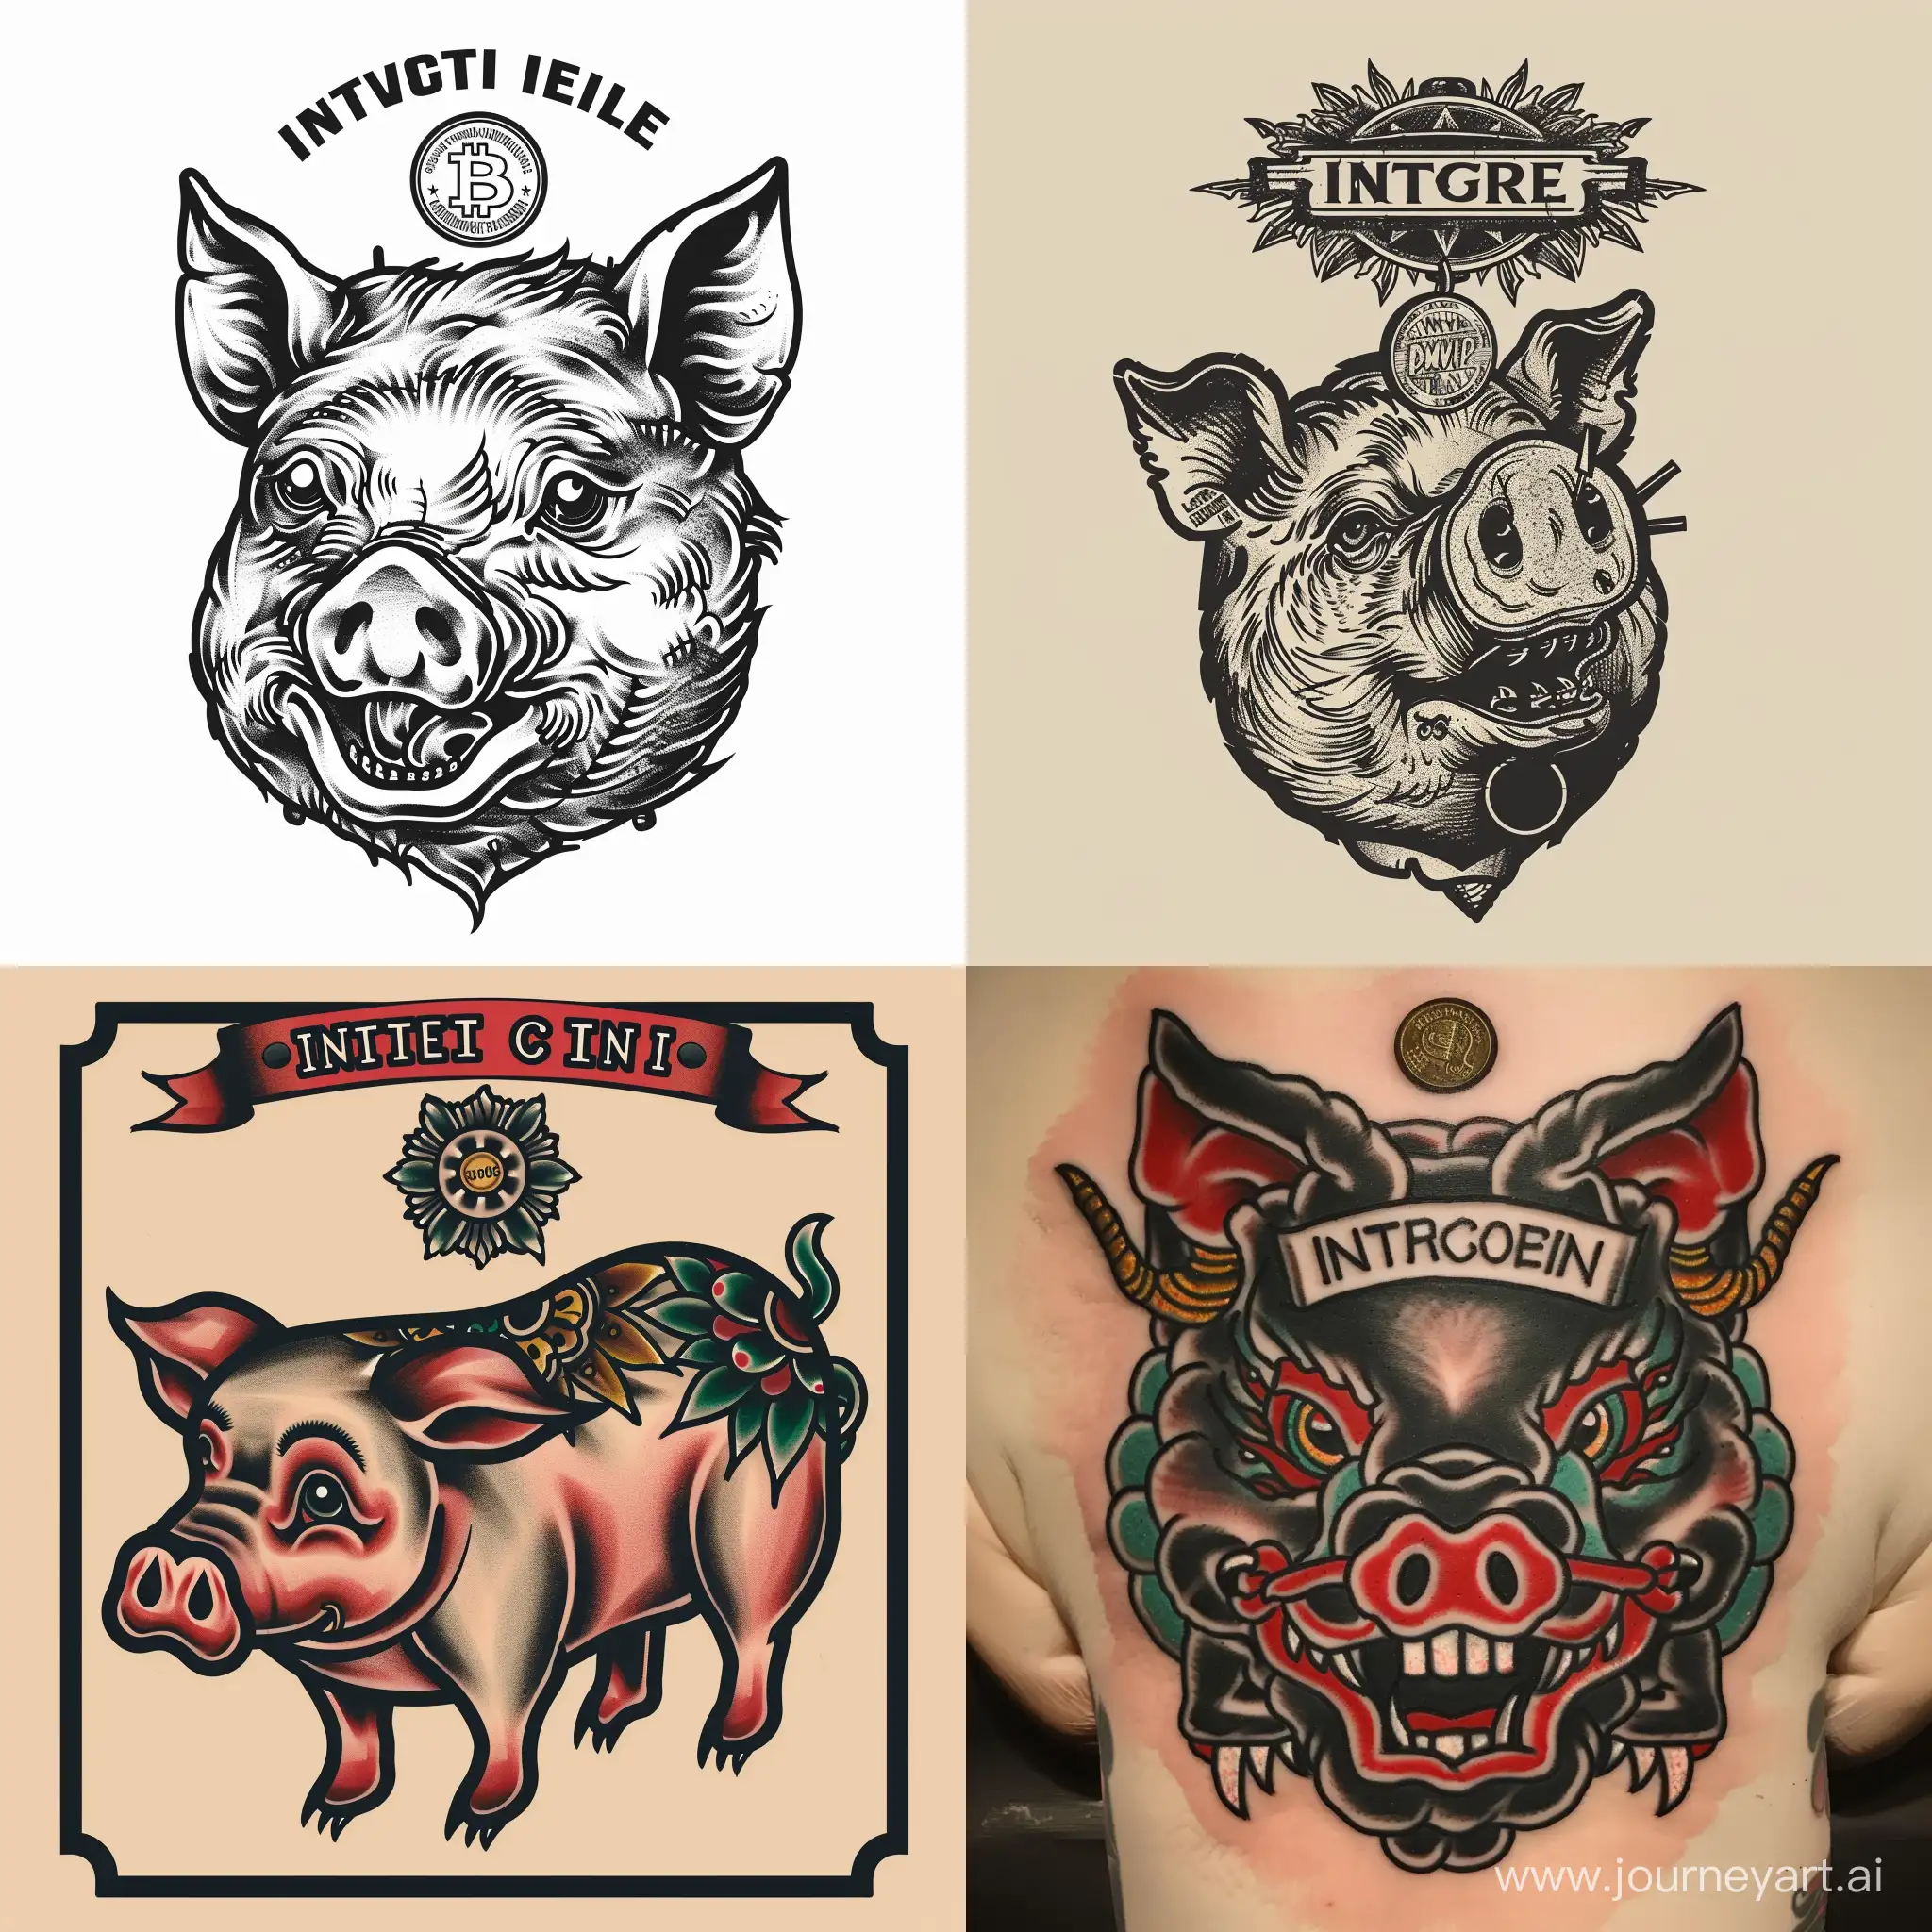 антропоморфная панк-свинья копилка, а сверху надпись "insert coin" в стиле традиционной татуировки